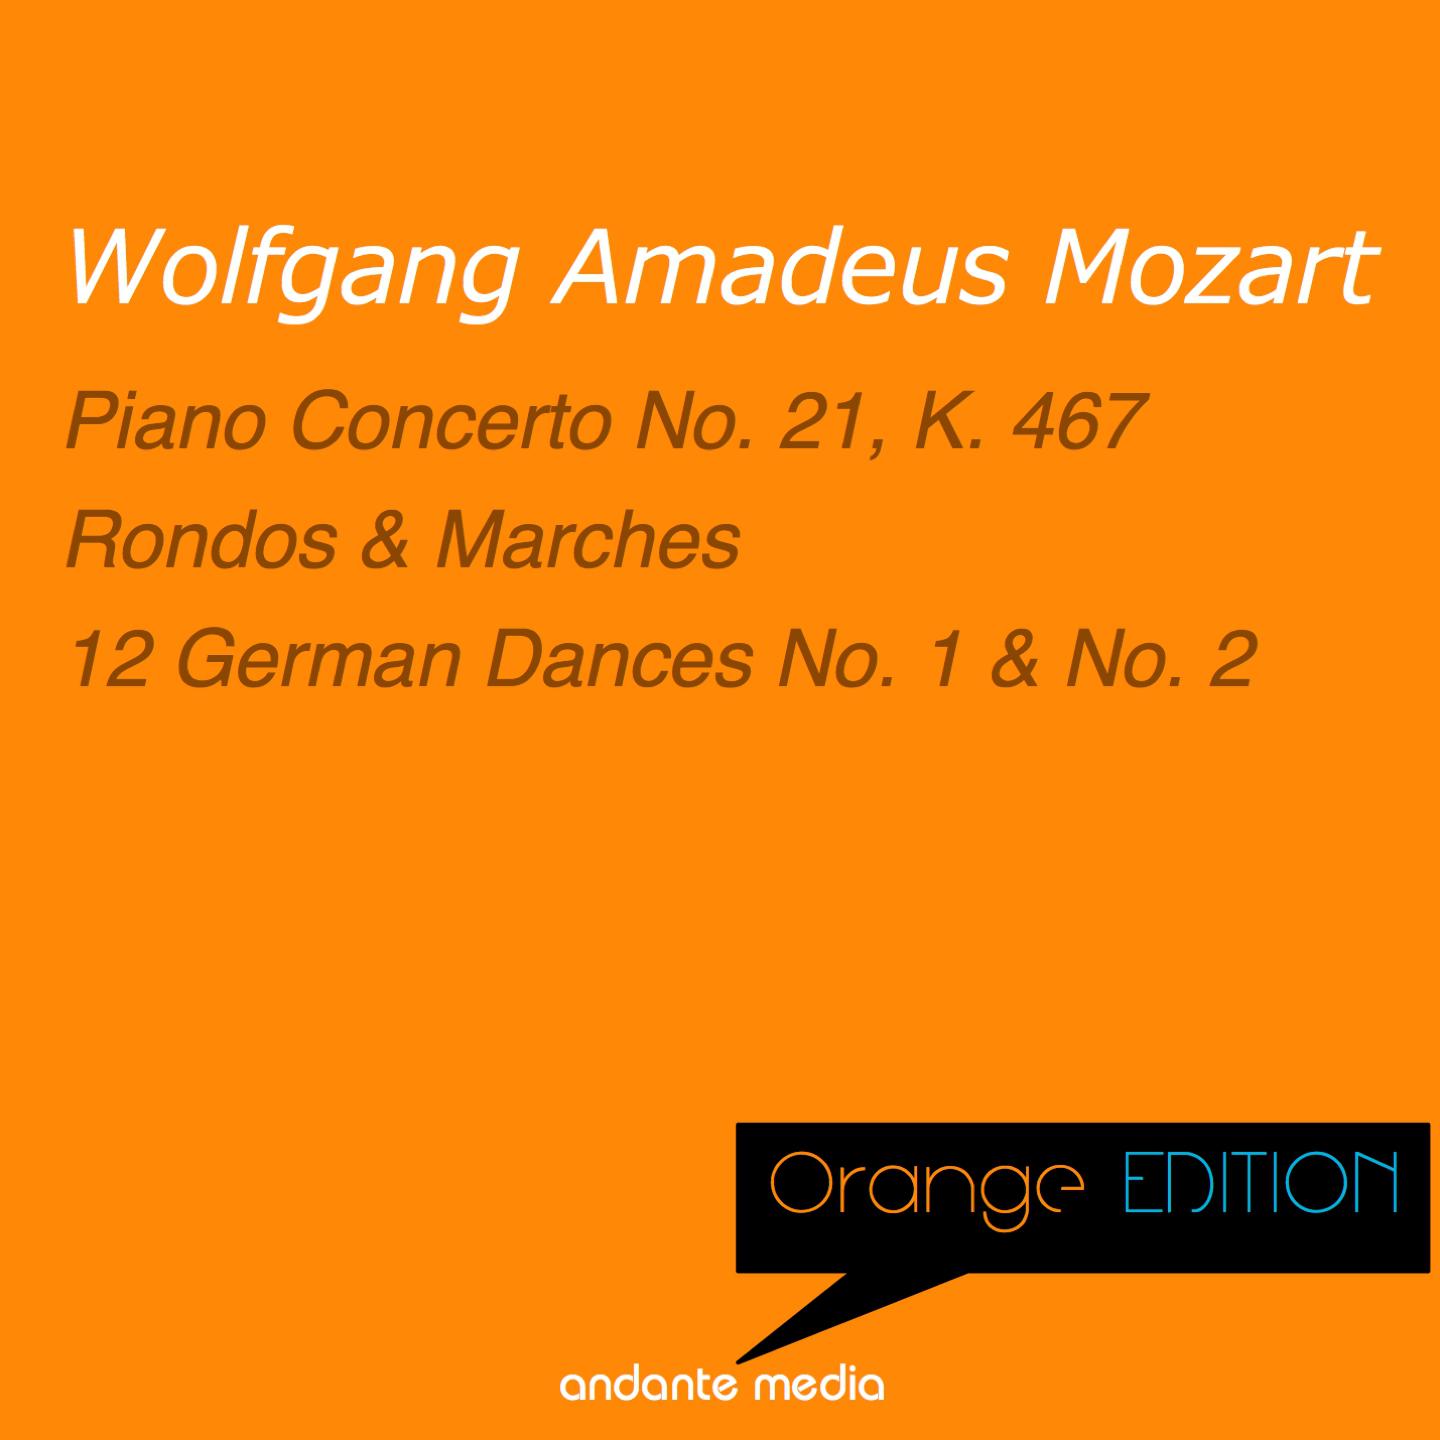 Orange Edition - Mozart: Piano Concerto No. 21, K. 467 & 12 German Dances Nos. 1 & 2